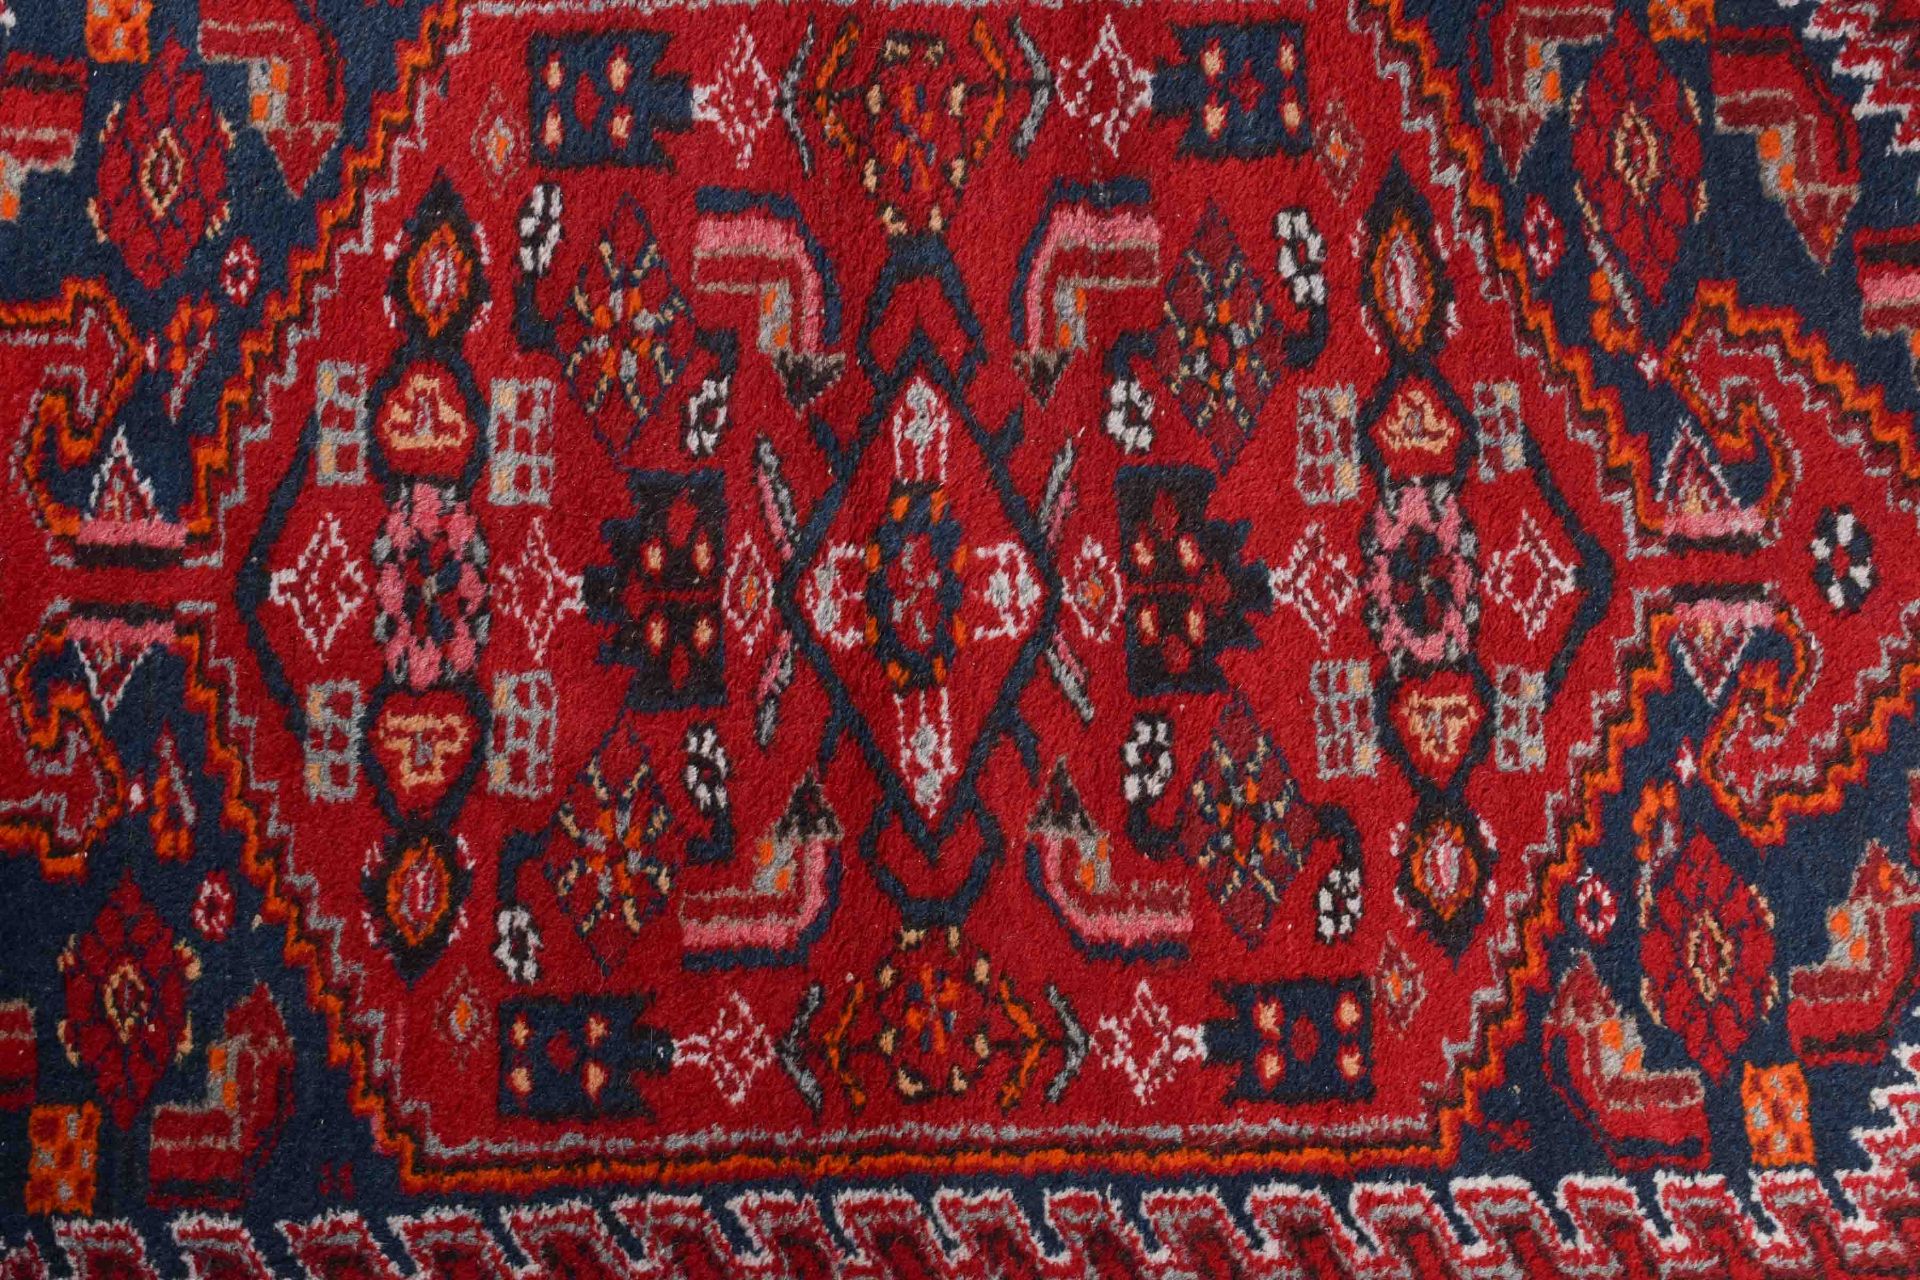 Alter Orientalischer Teppich212 cm x 108 cmOld oriental carpet212 cm x 108 cm - Bild 2 aus 4